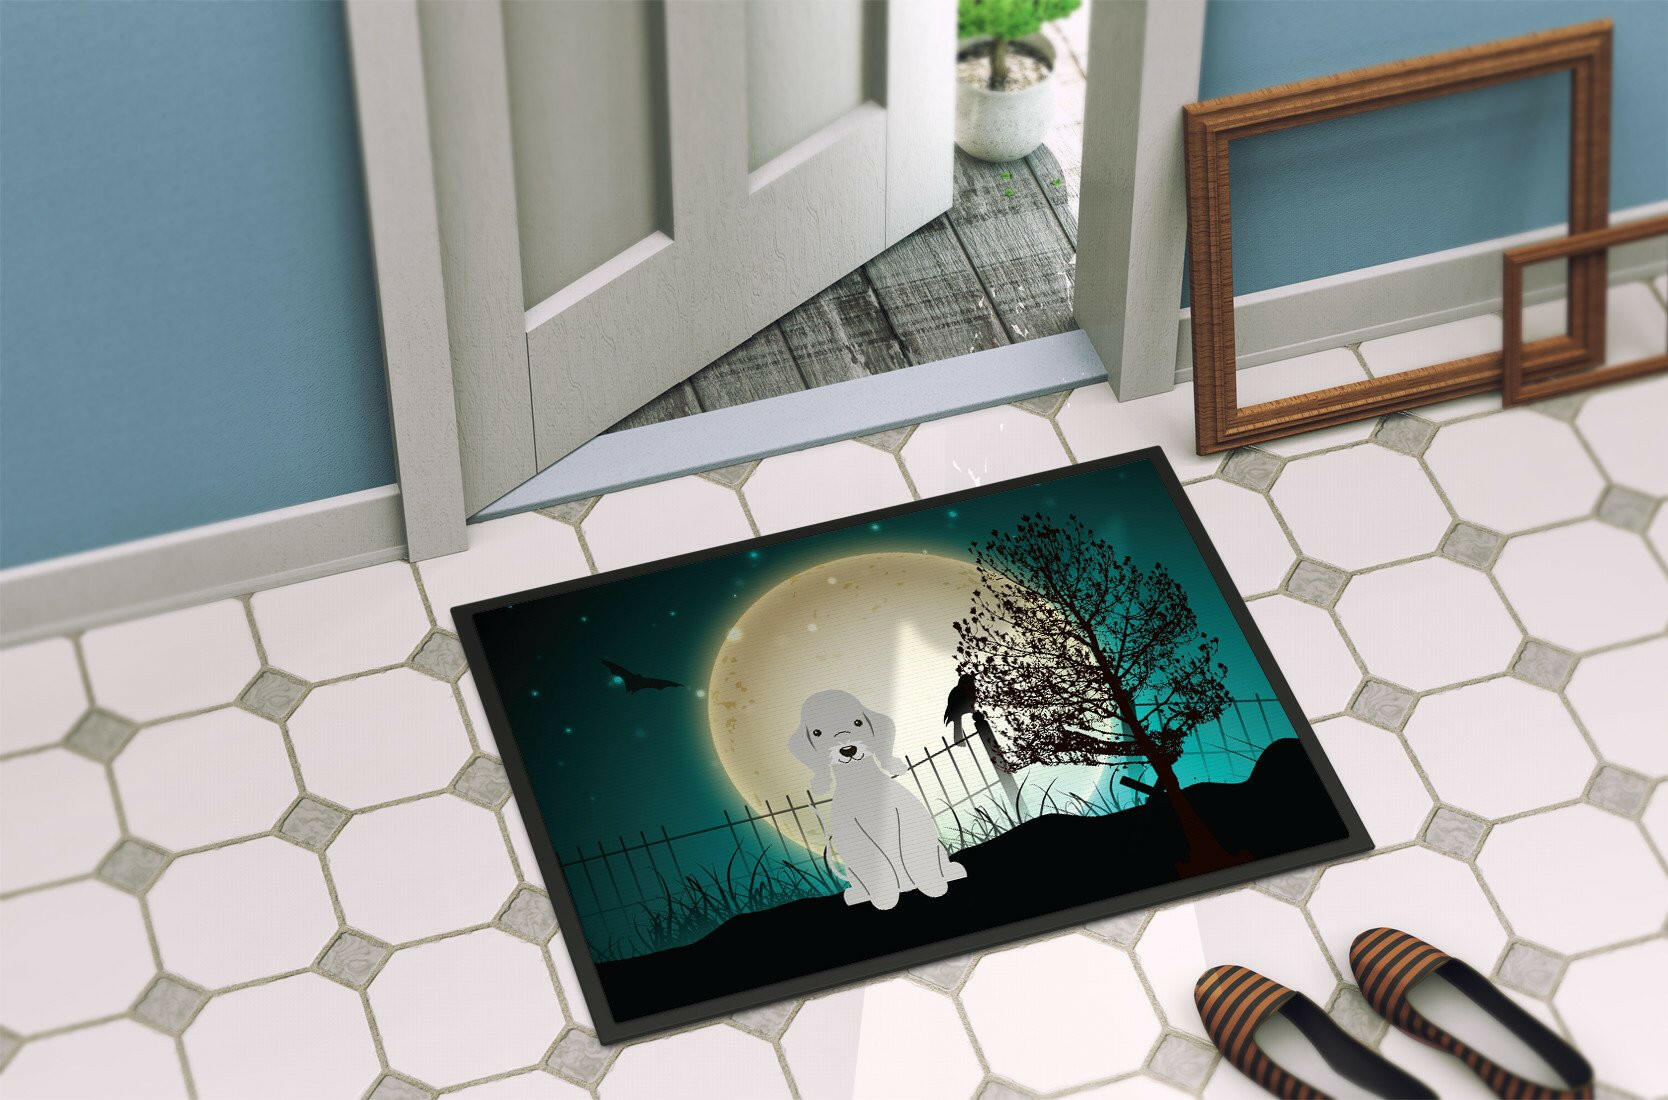 Halloween Scary Bedlington Terrier Blue Indoor or Outdoor Mat 24x36 BB2280JMAT - the-store.com